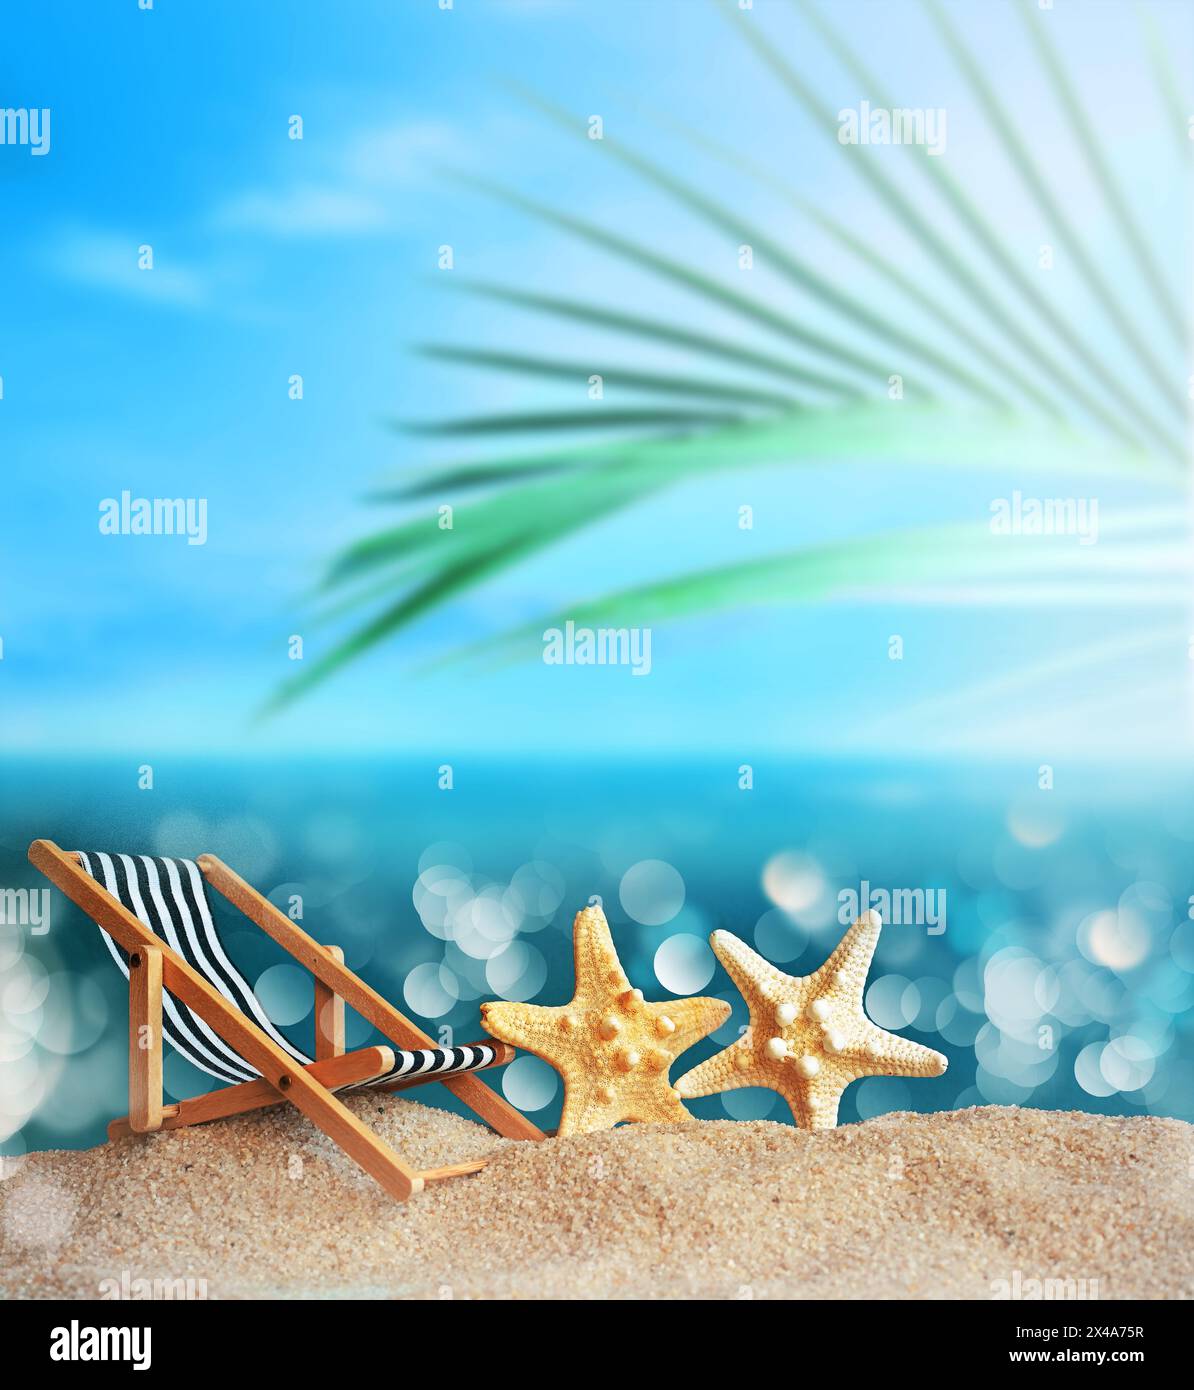 Transat, étoiles de mer et palmiers sur la plage de sable. Heure d'été. Concept d'été. Banque D'Images